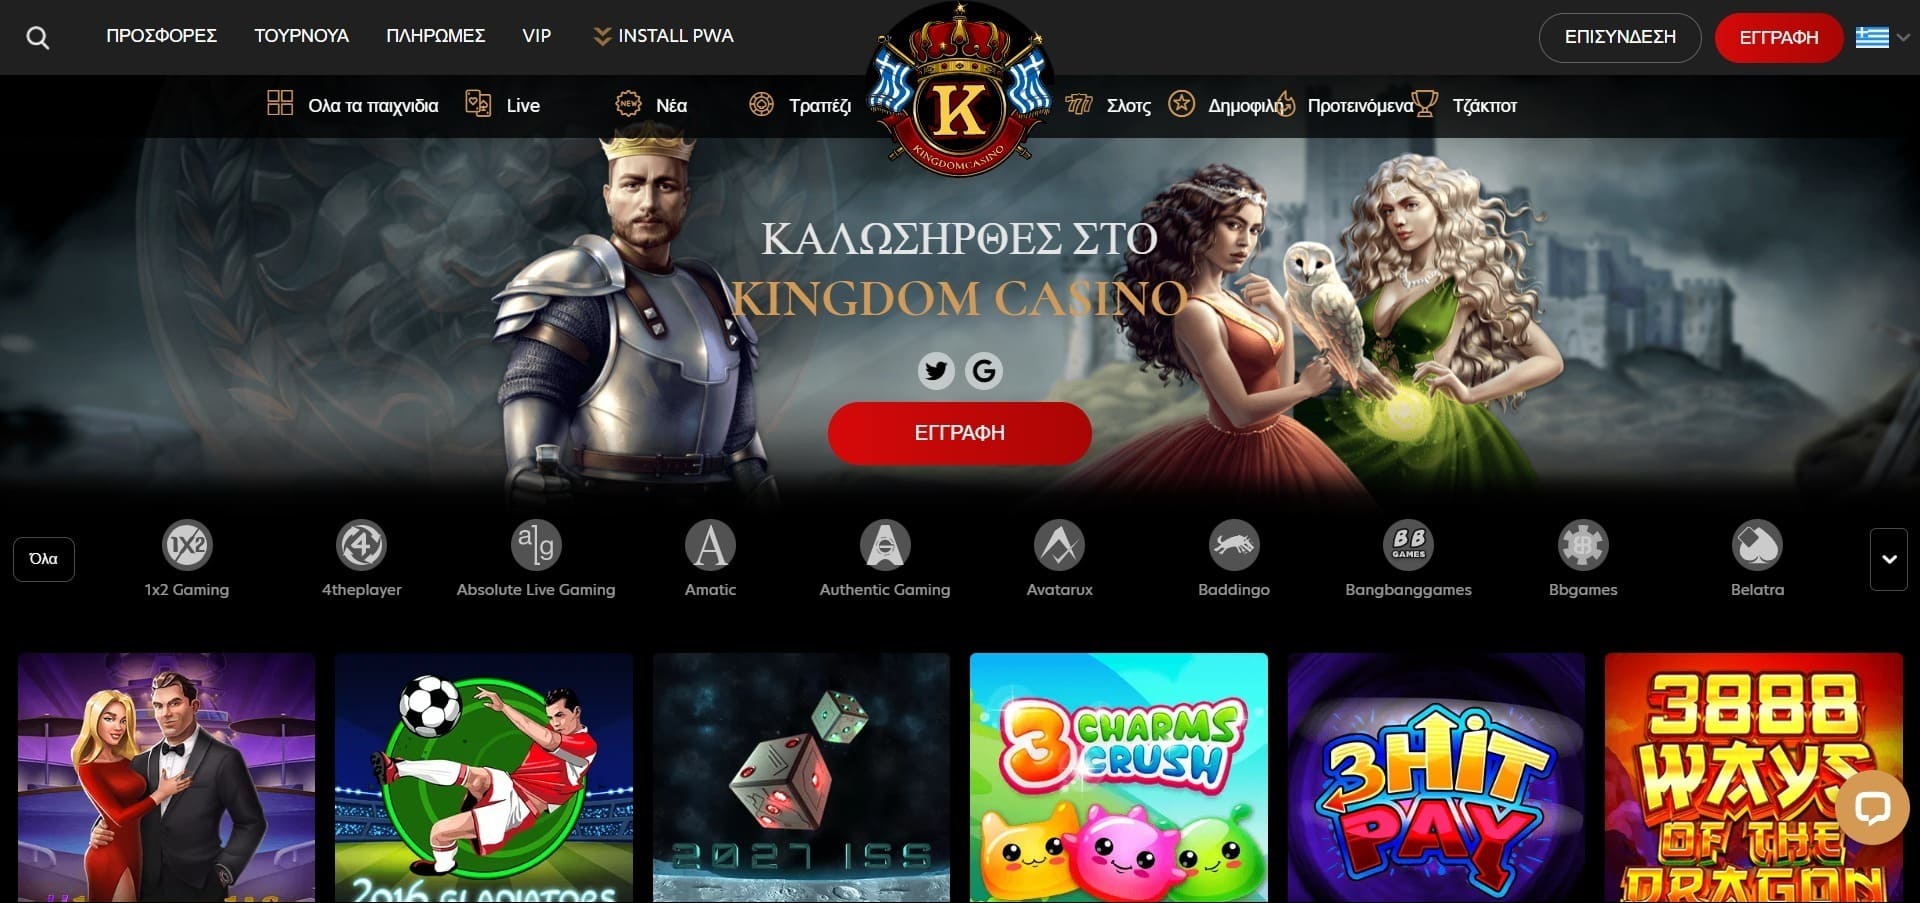 Επίσημος ιστότοπος της Kingdom casino